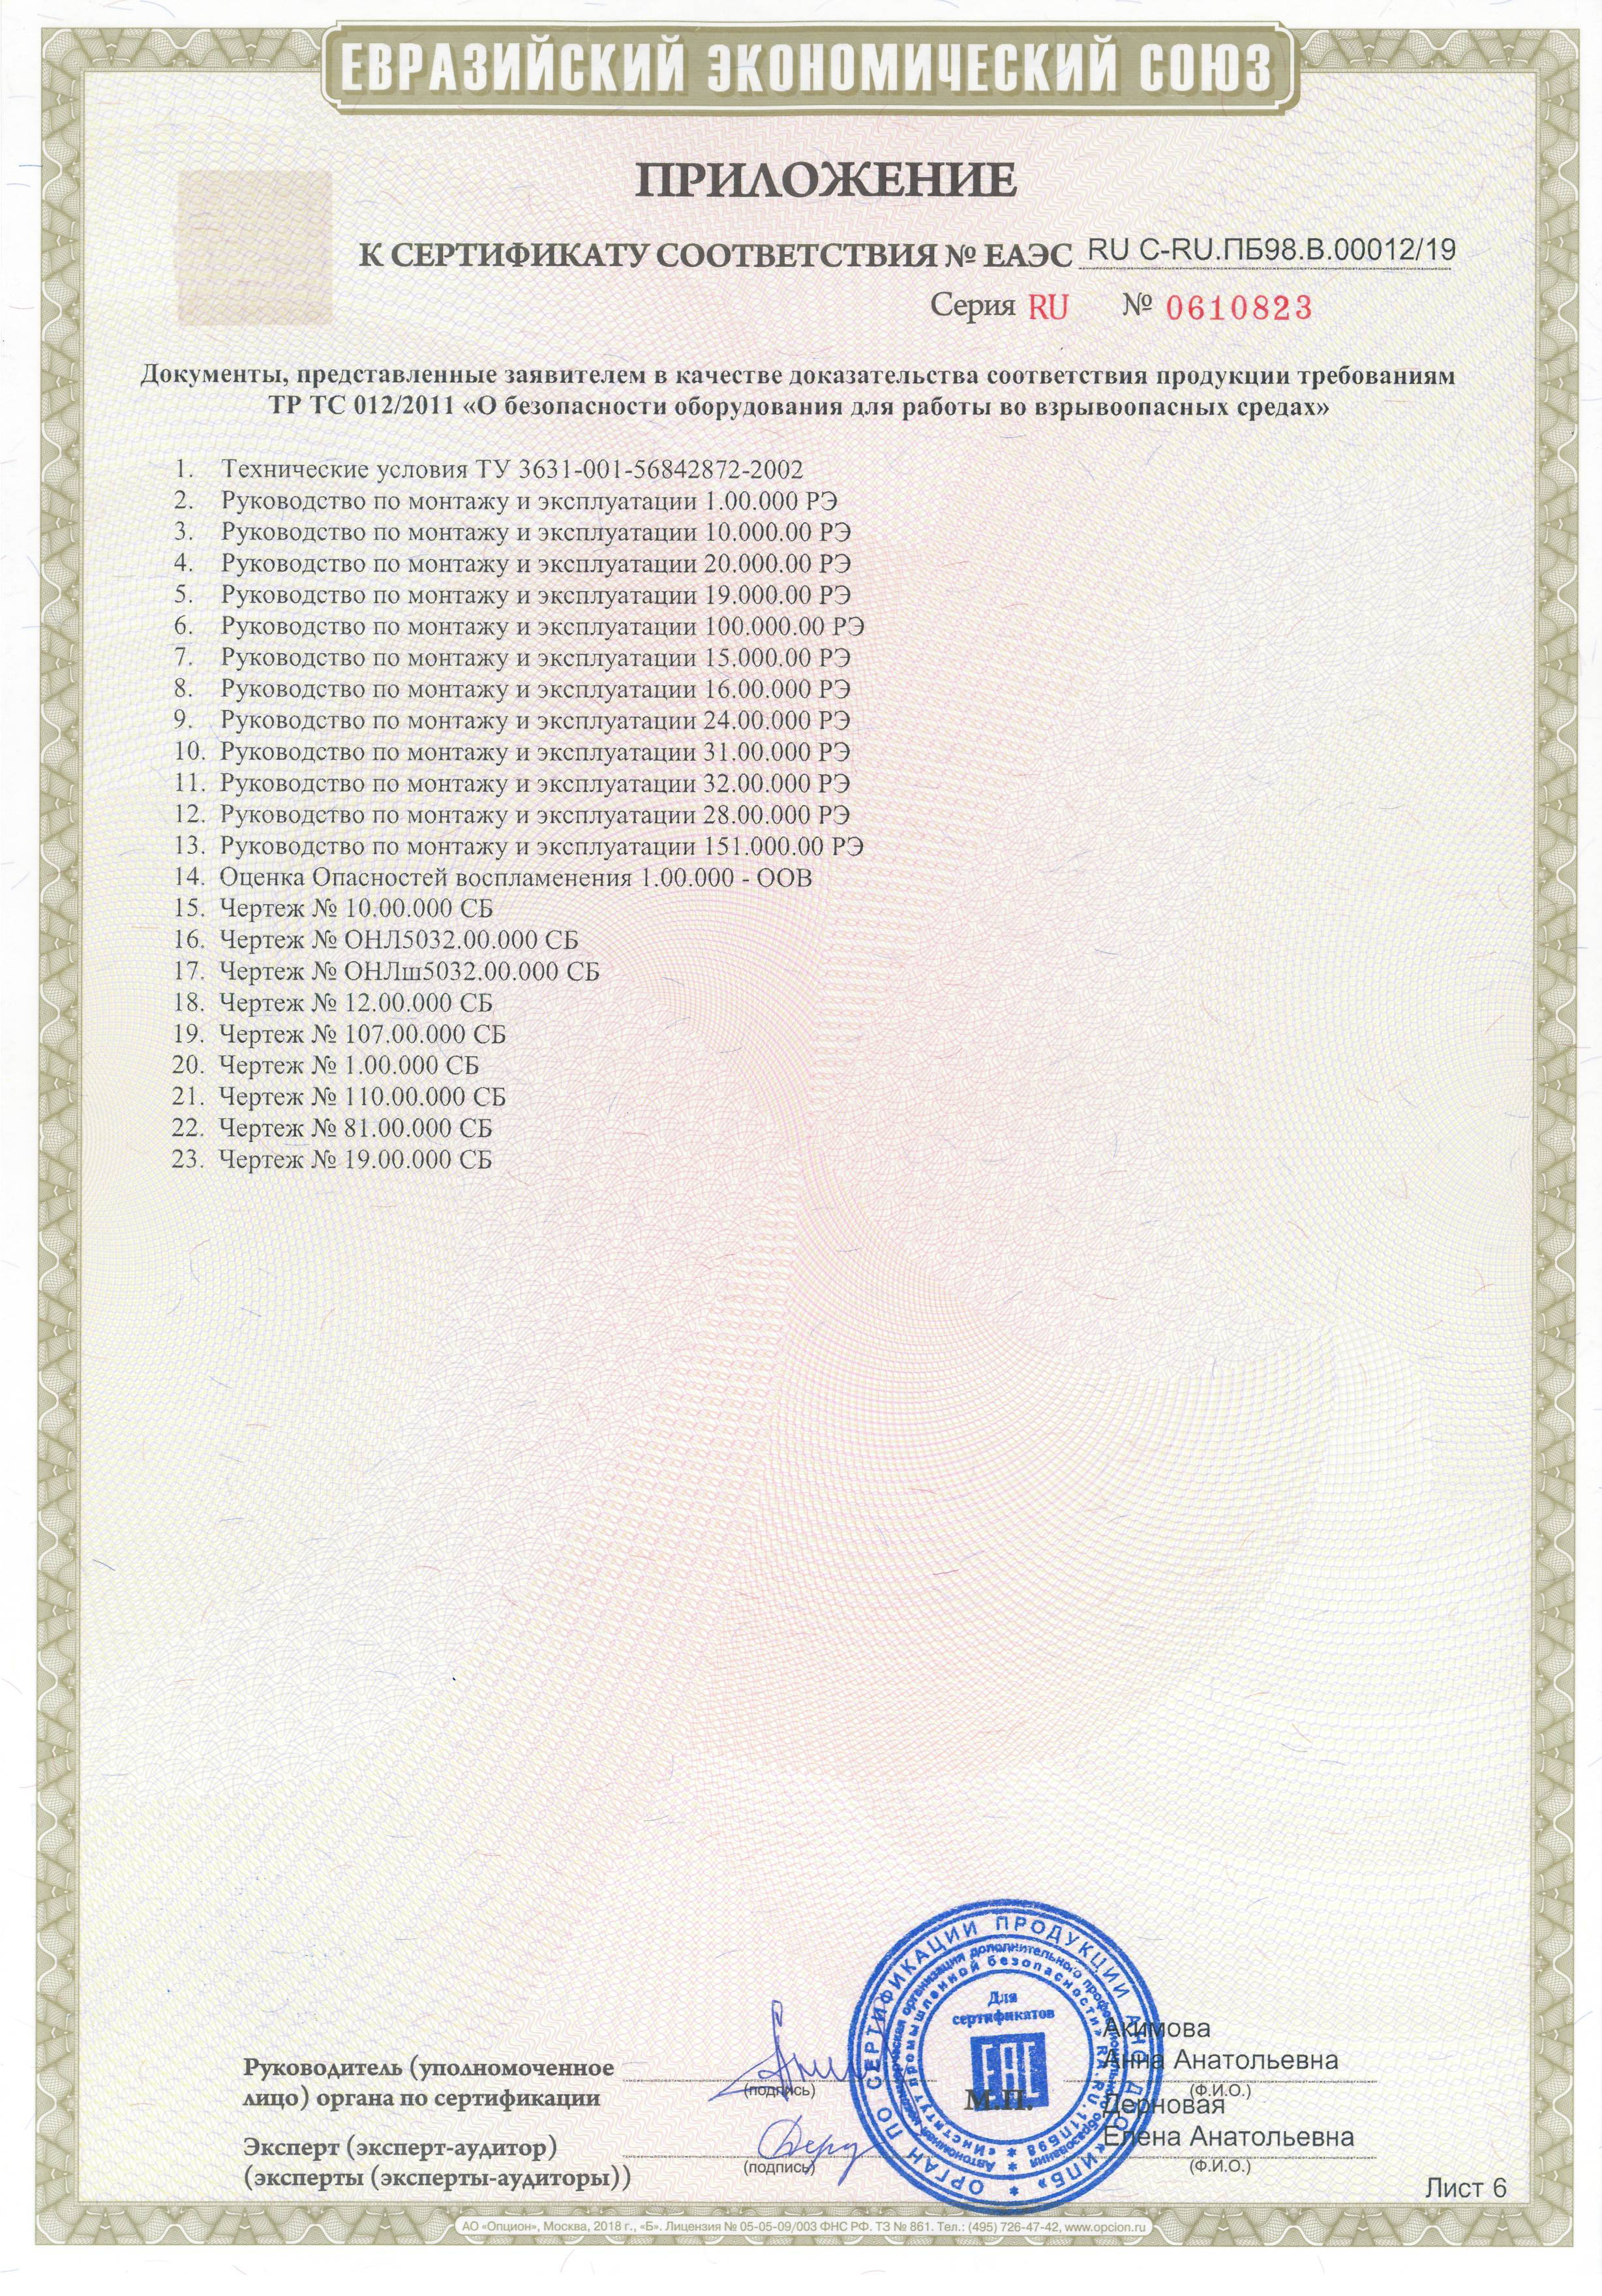 Сертификат соответсвия Таможенного союза